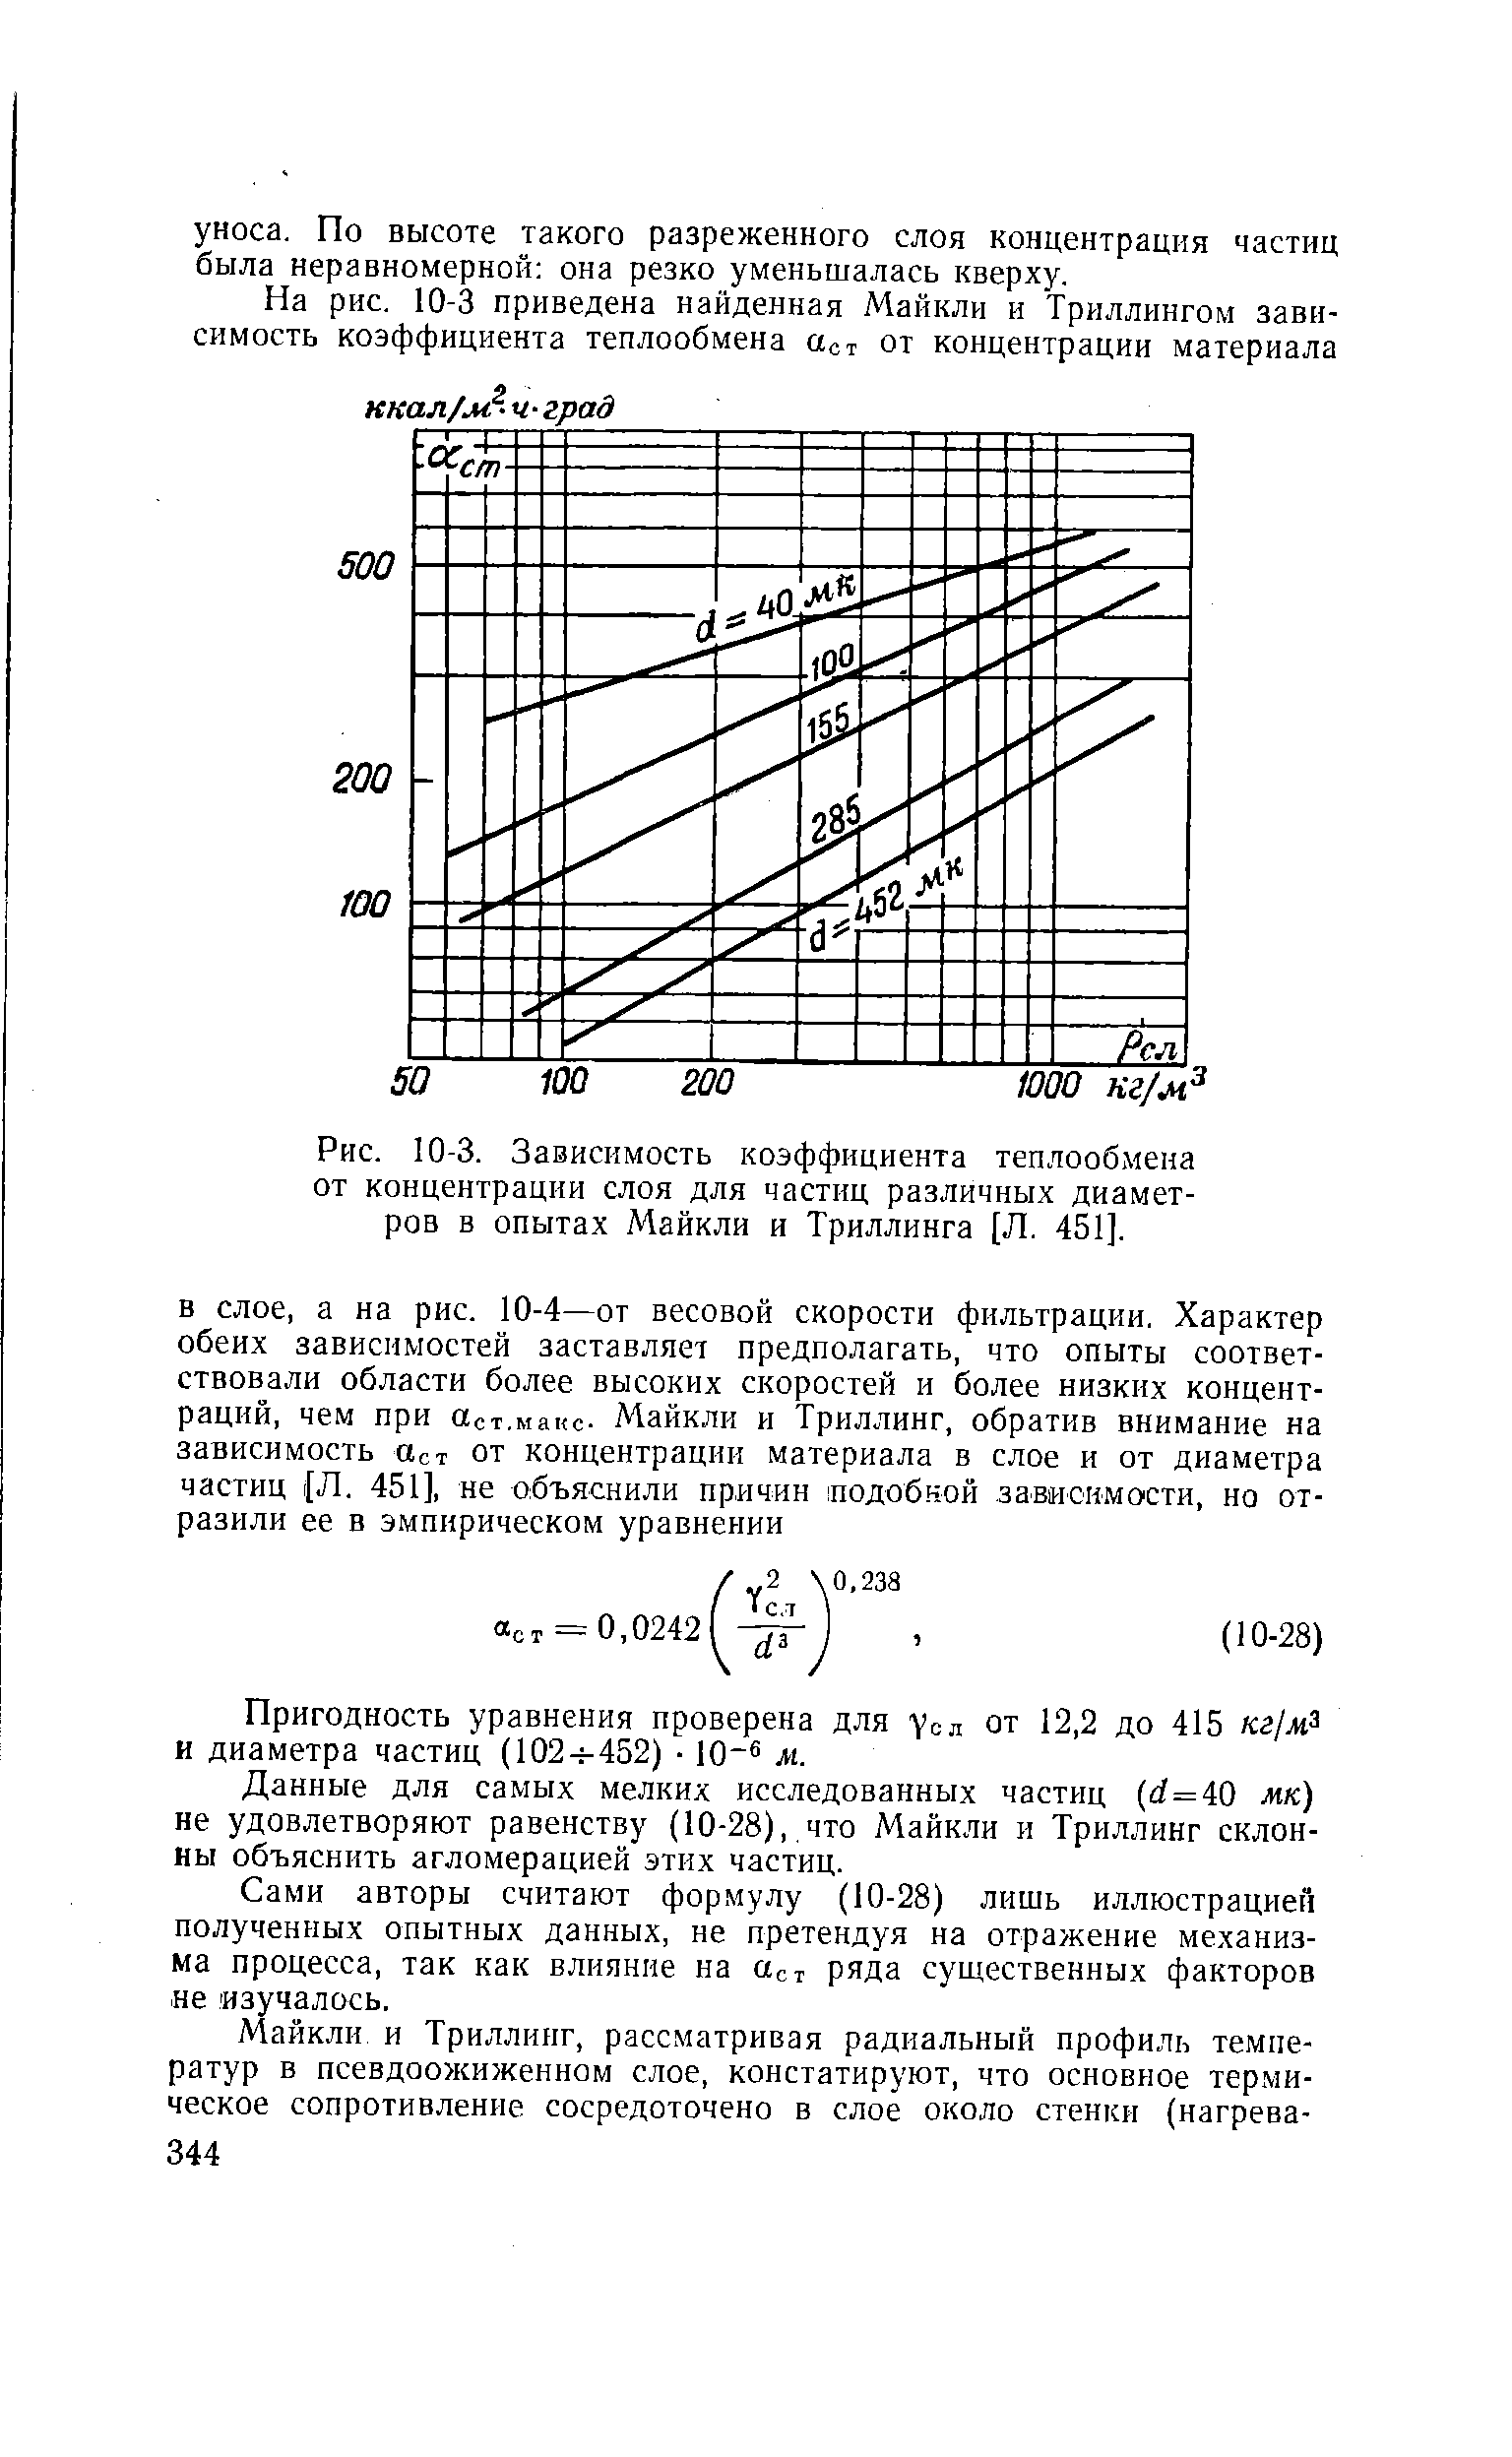 Данные для самых мелких исследованных частиц (rf=40 мк) не удовлетворяют равенству (10-28), что Майкли и Триллинг склонны объяснить агломерацией этих частиц.
